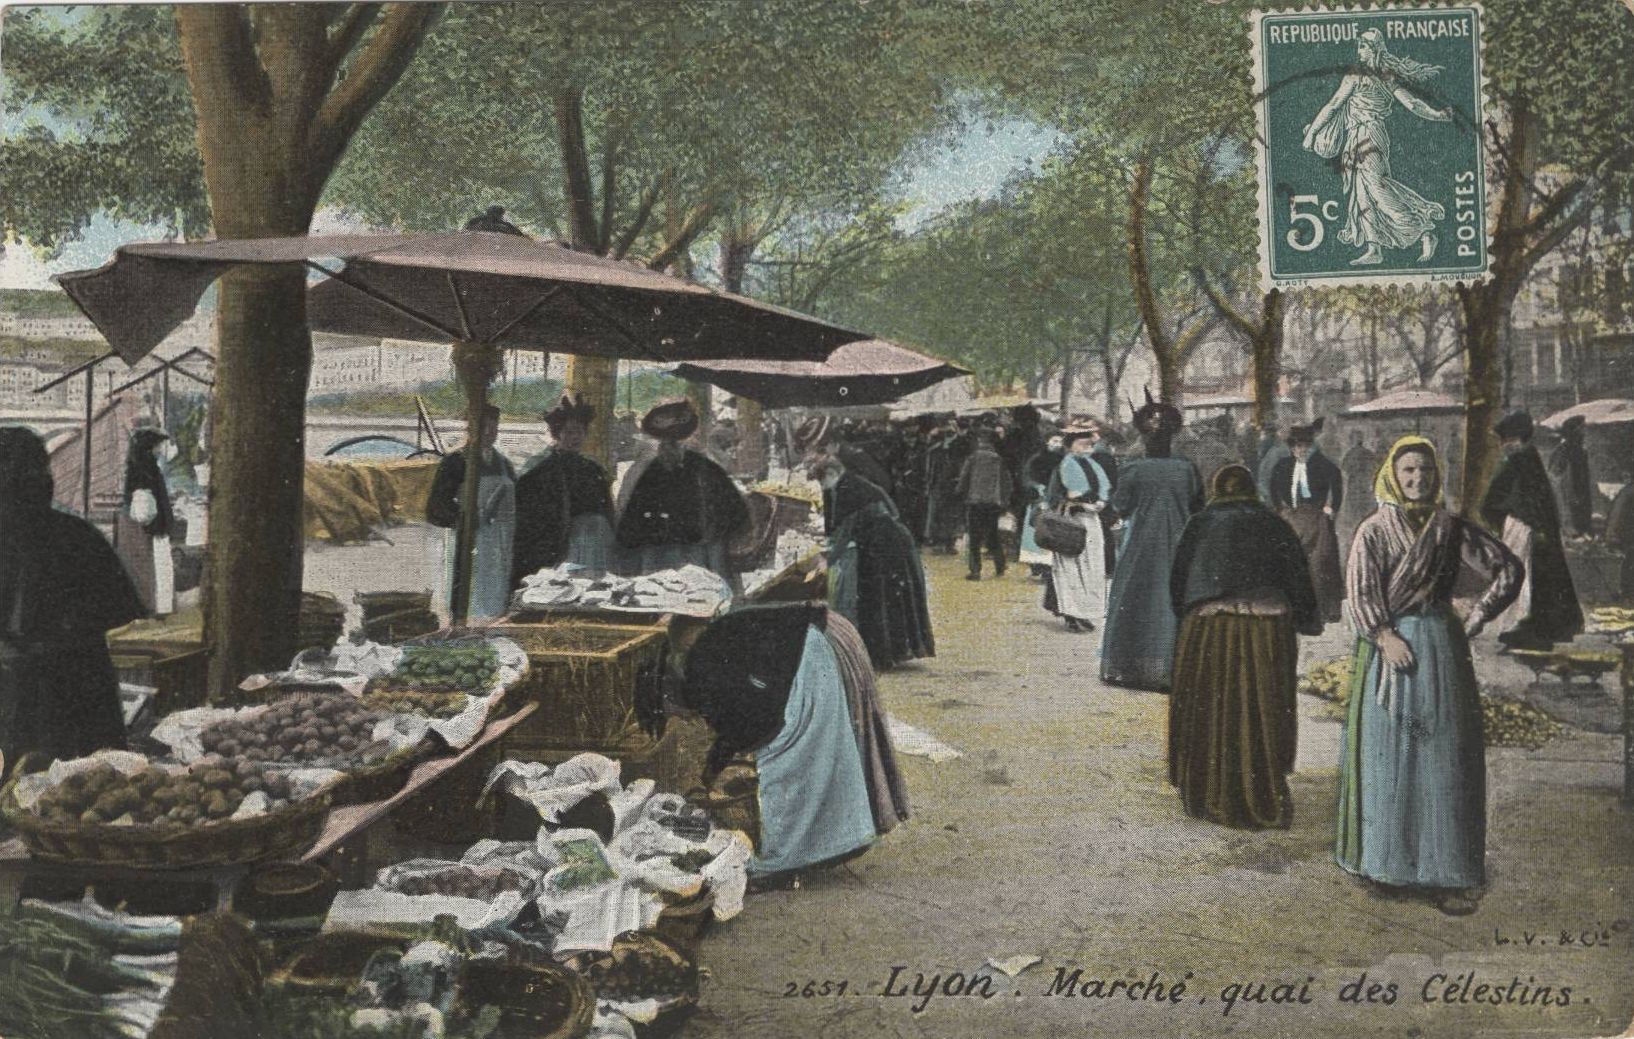 Marché sur le quai des Célestins : carte postale colorisée (vers 1910, 4FI/4086)